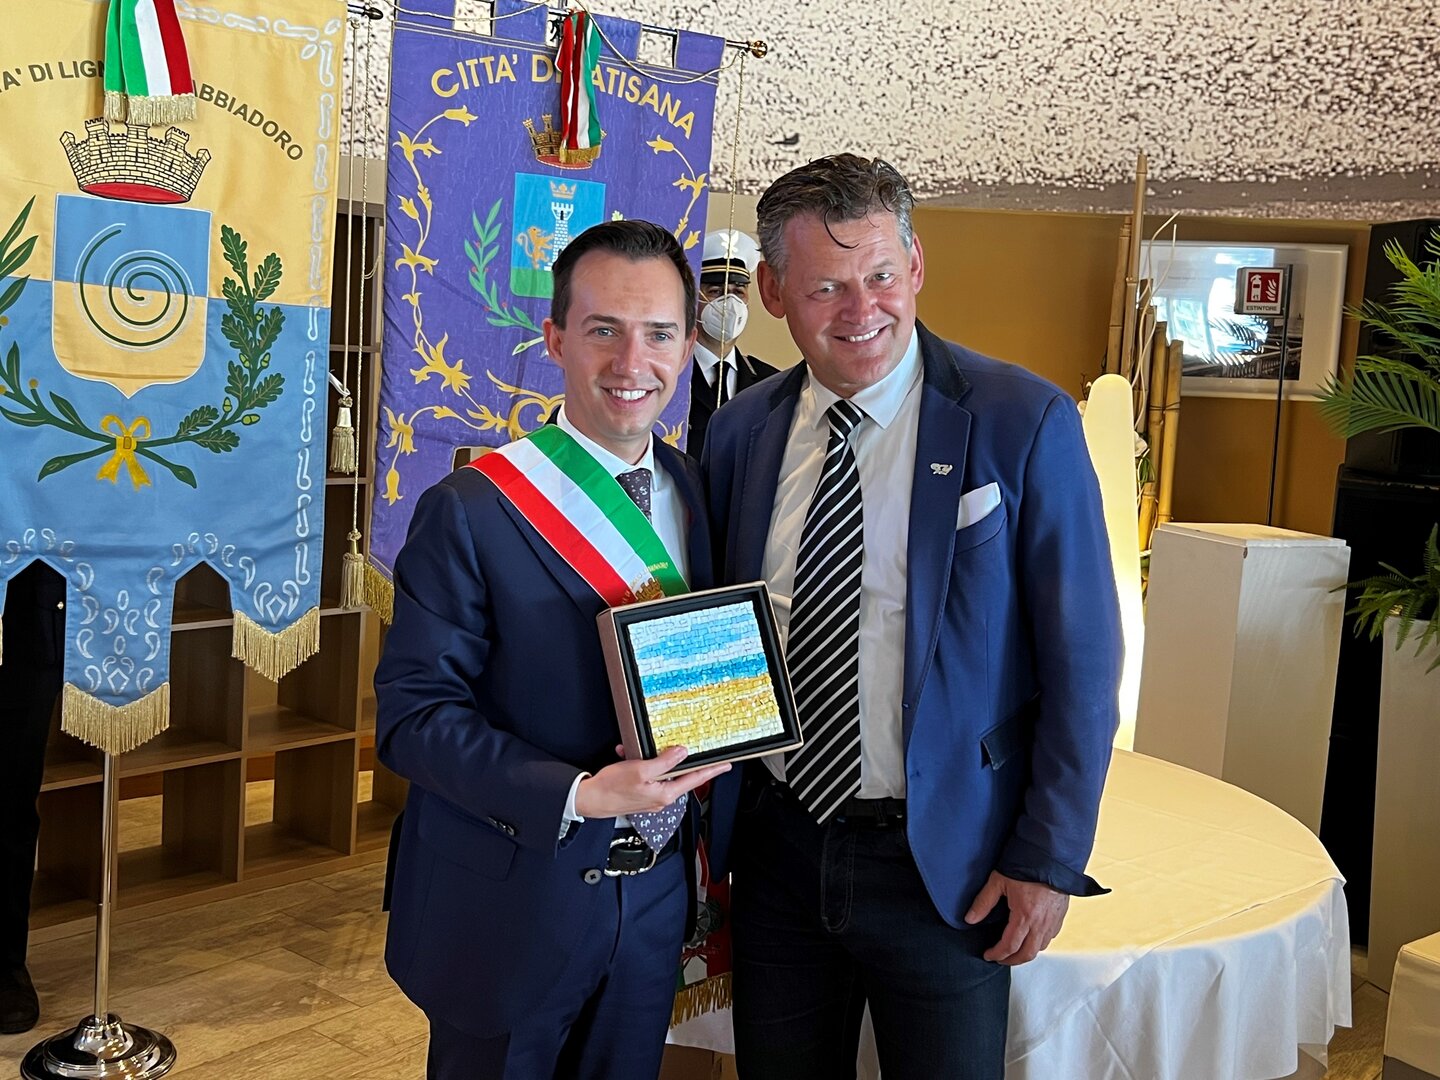 Bürgermeister Christian Scheider mit Amtskollege Luca Fanotto beim offiziellen Festakt zur Saisoneröffnung in Lignano Sabbiadoro.  Foto: Büro Bgm.